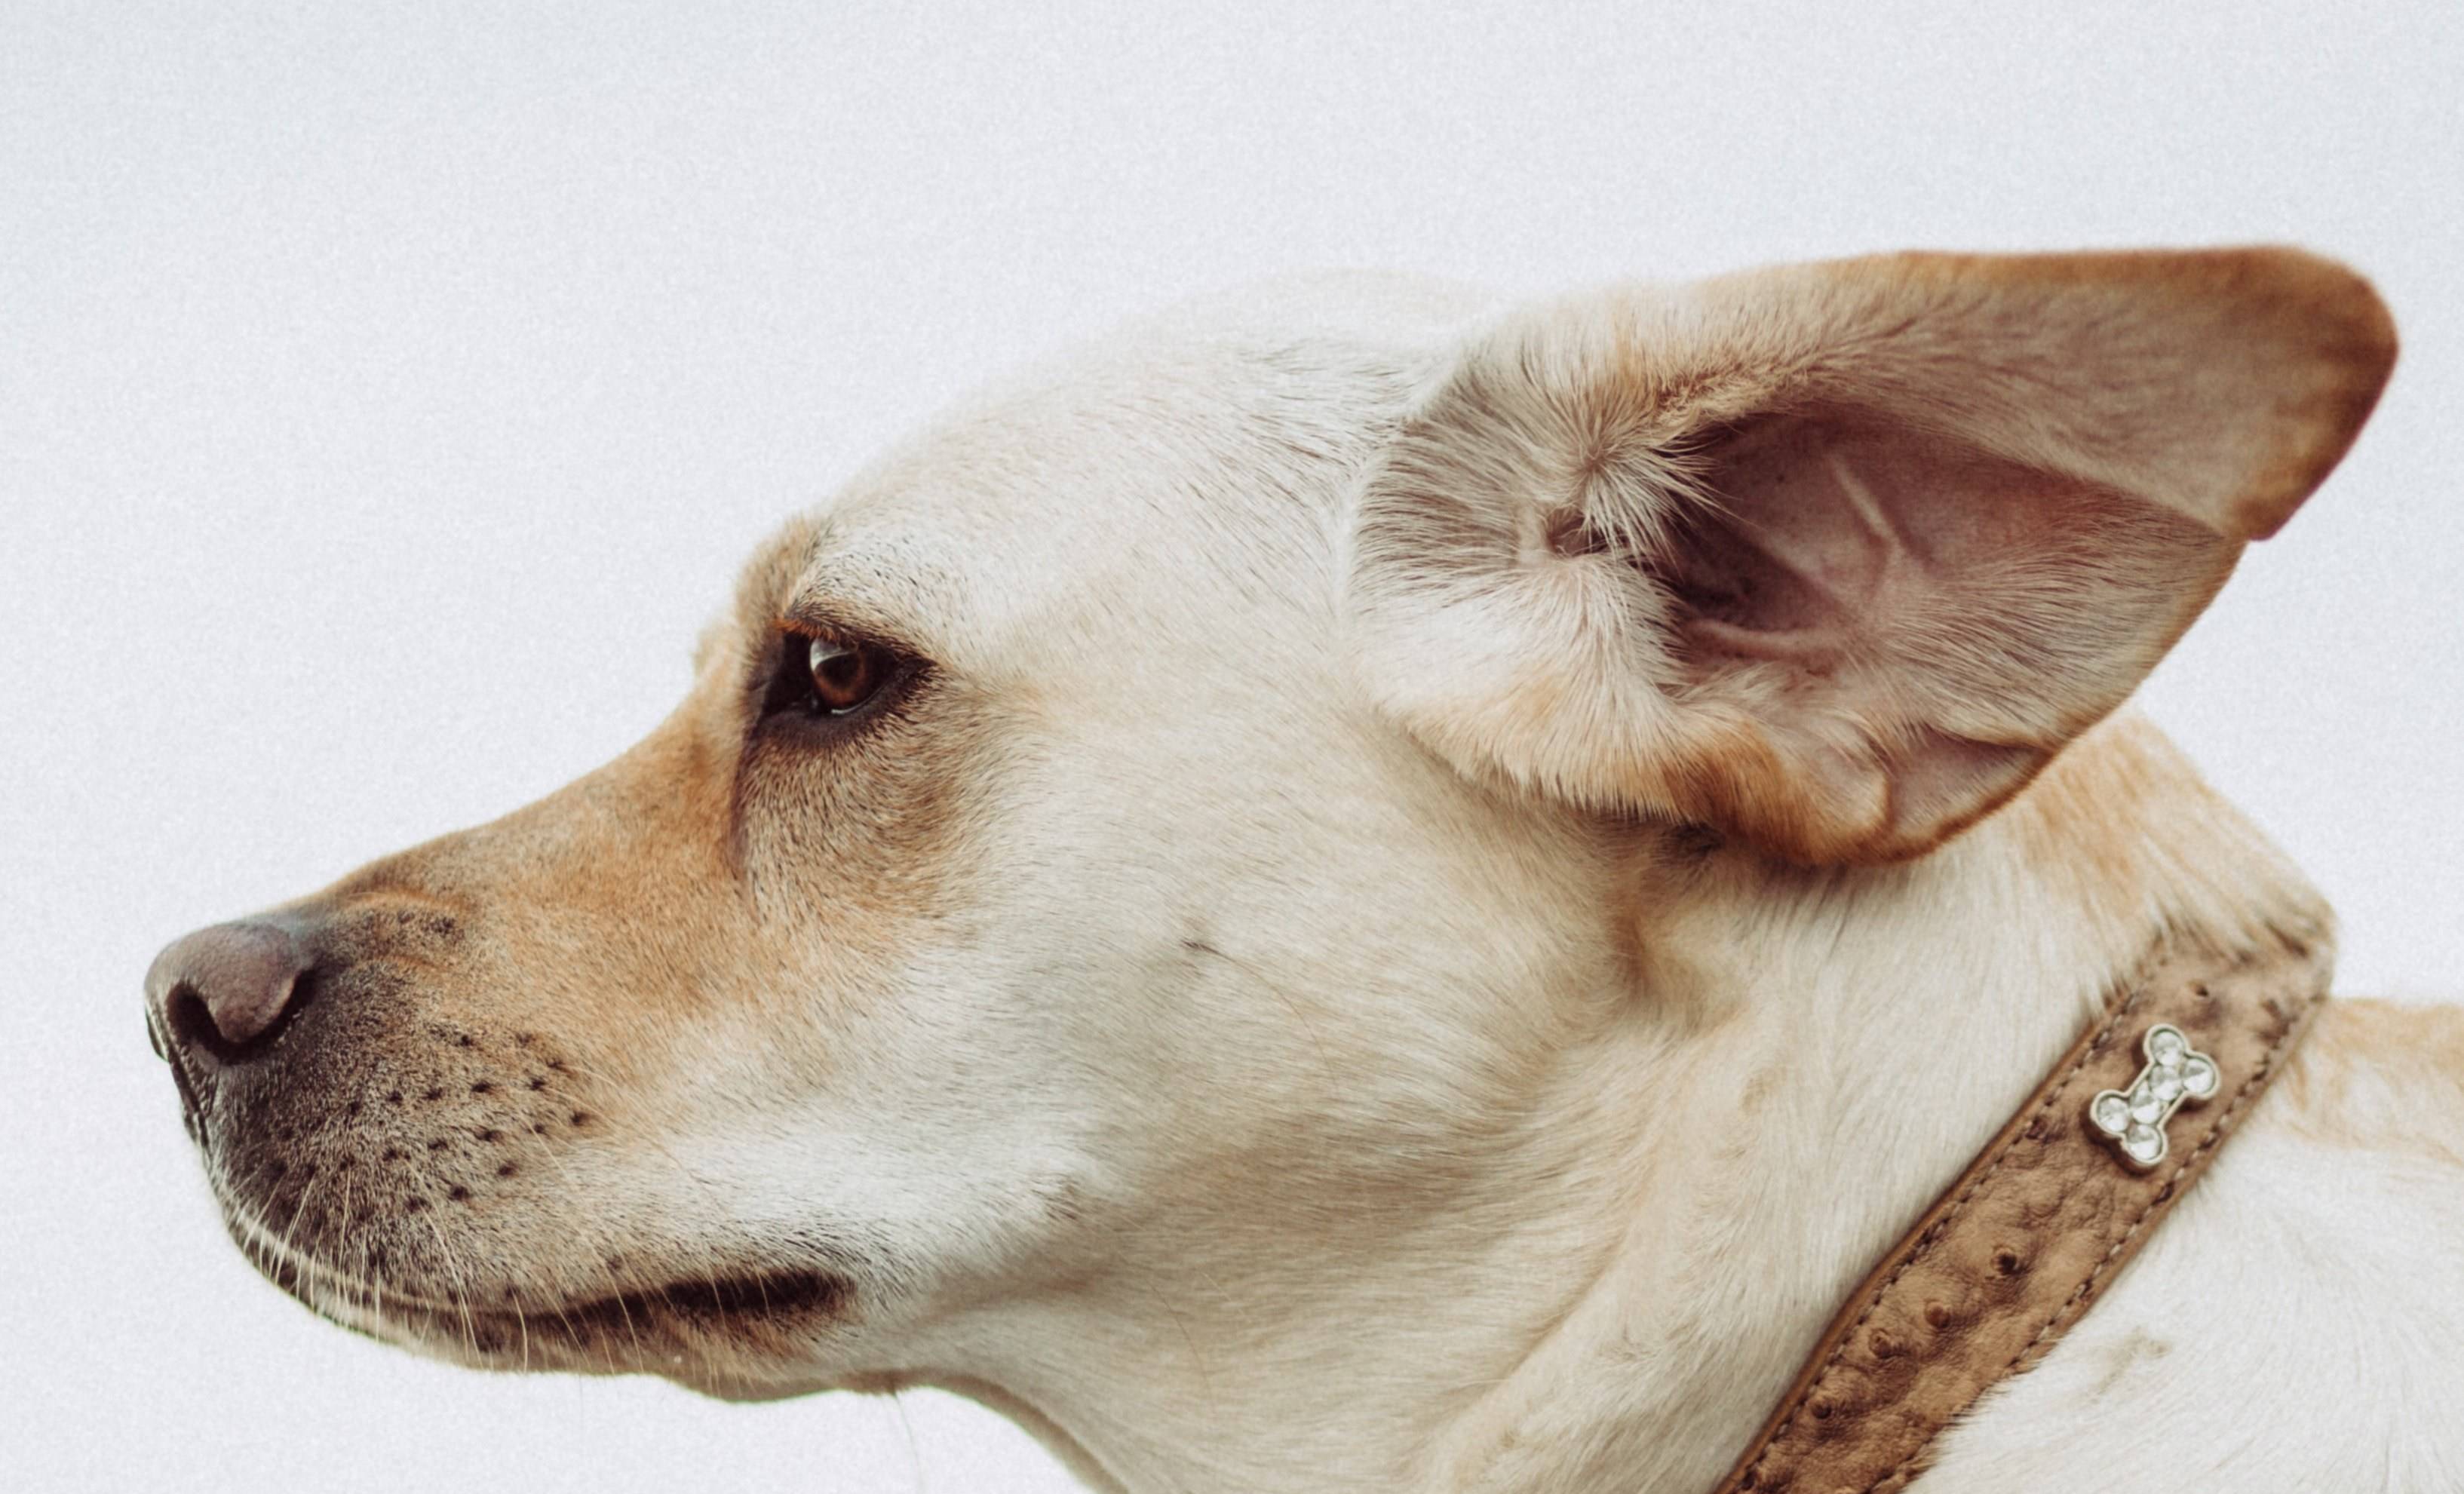 Собака чешет уши: причины, лечение и профилактика
собака чешет уши: причины, лечение и профилактика